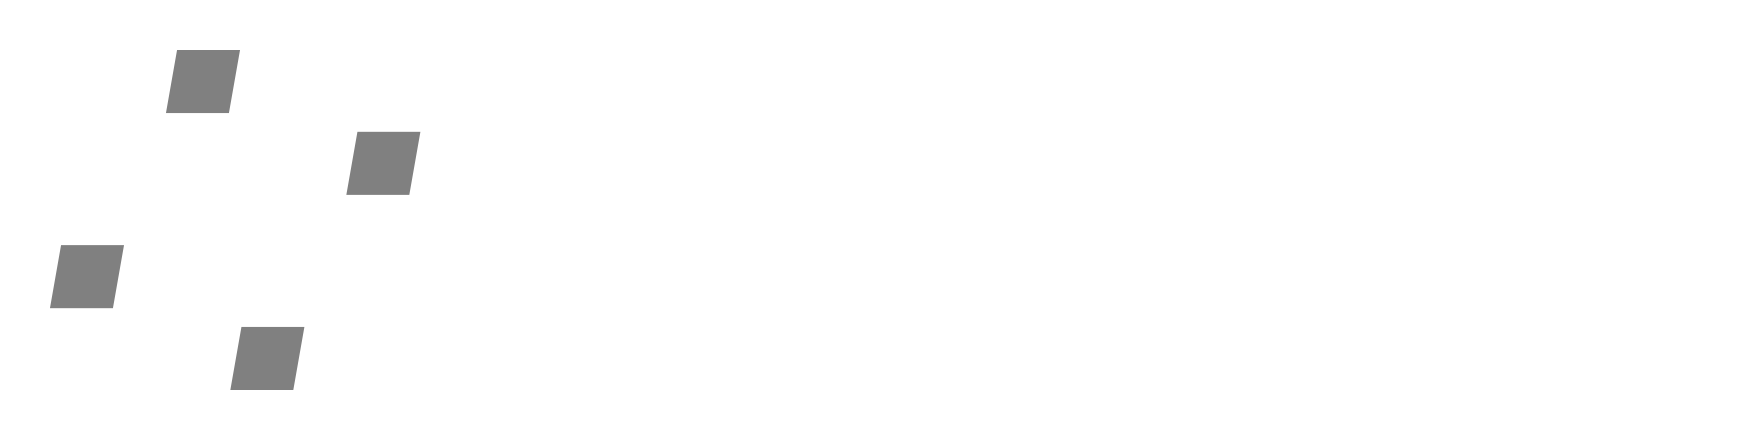 pommel_logo_H_WH